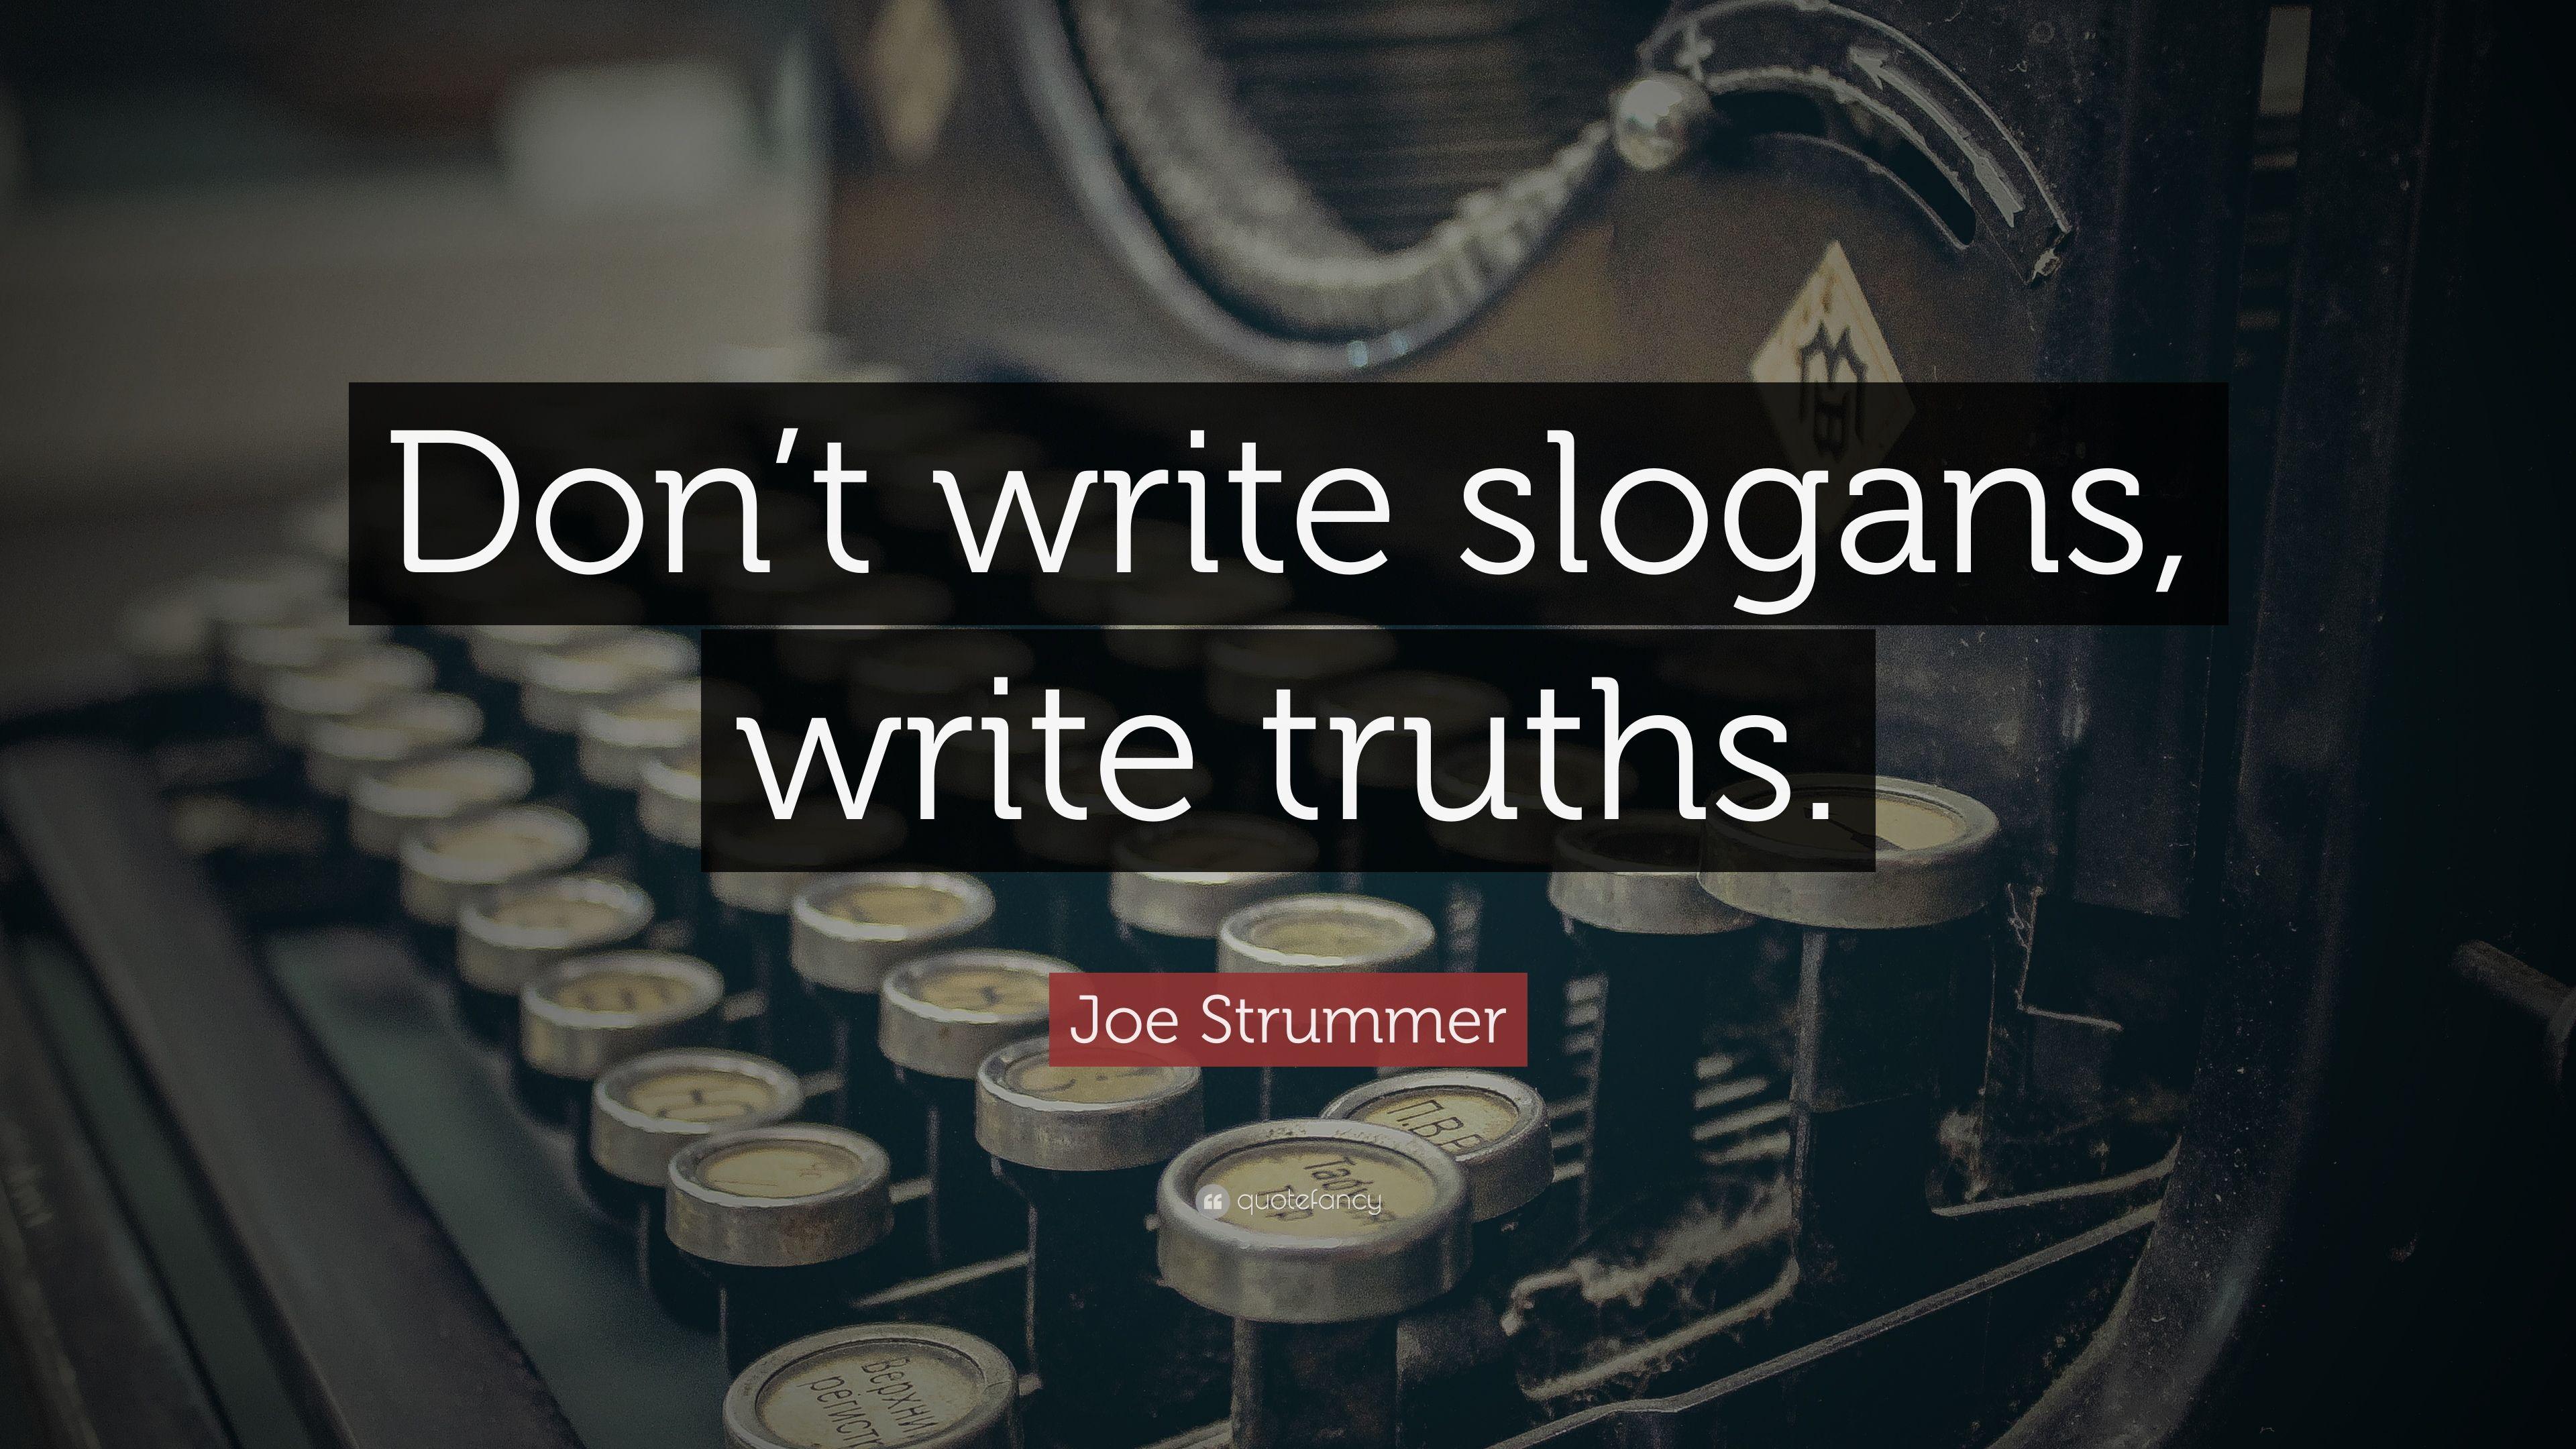 Joe Strummer Quote: “Don't write slogans, write truths.” 9